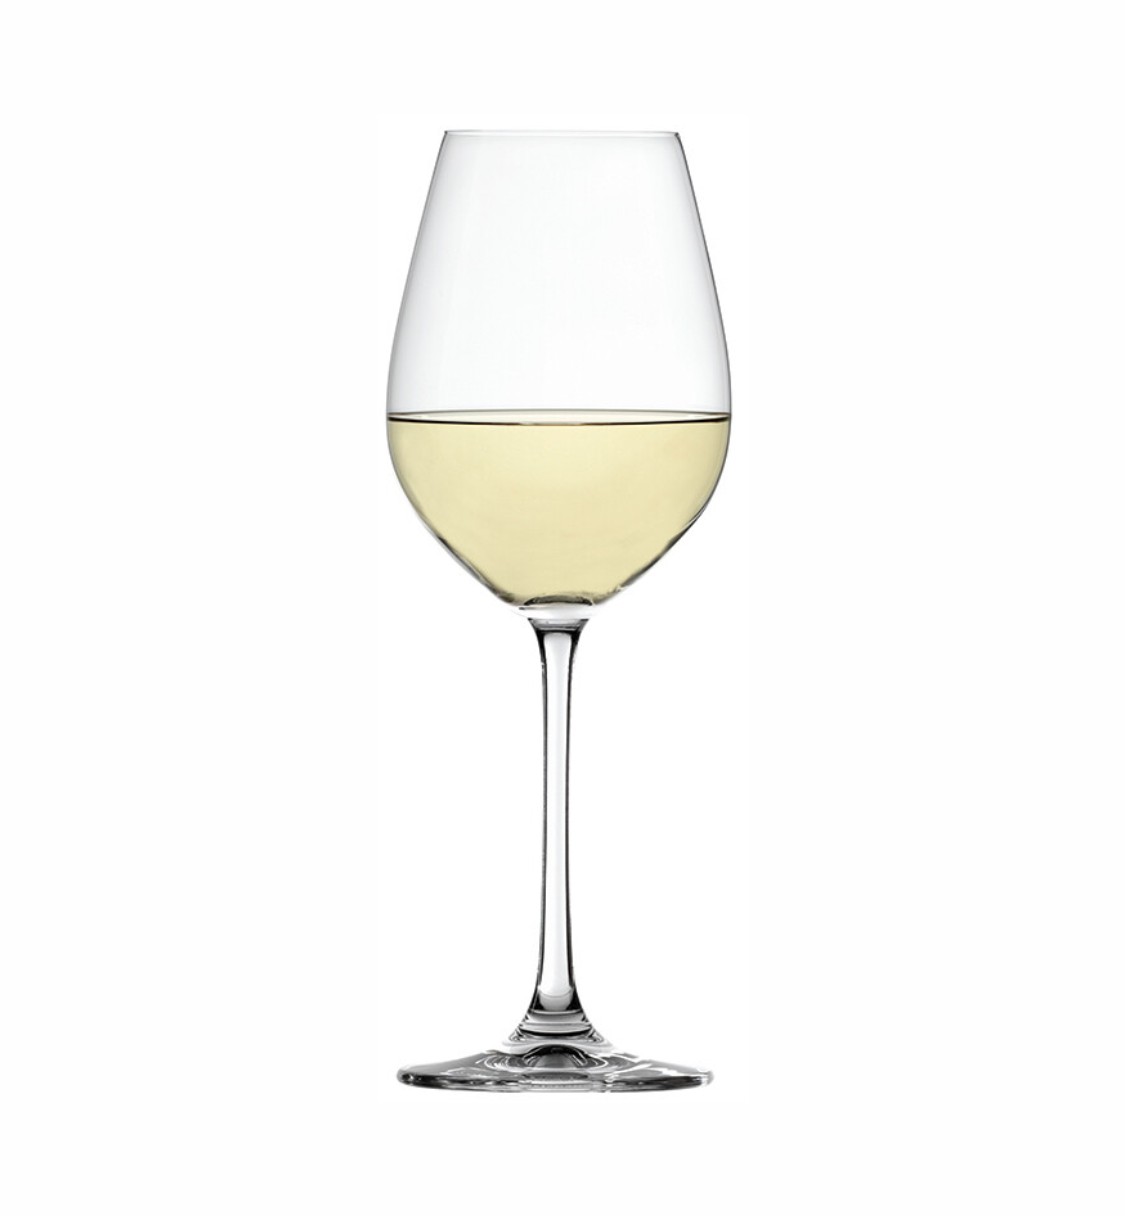 Бокалы Spiegelau Salute white wine набор из 4 шт. 465 мл